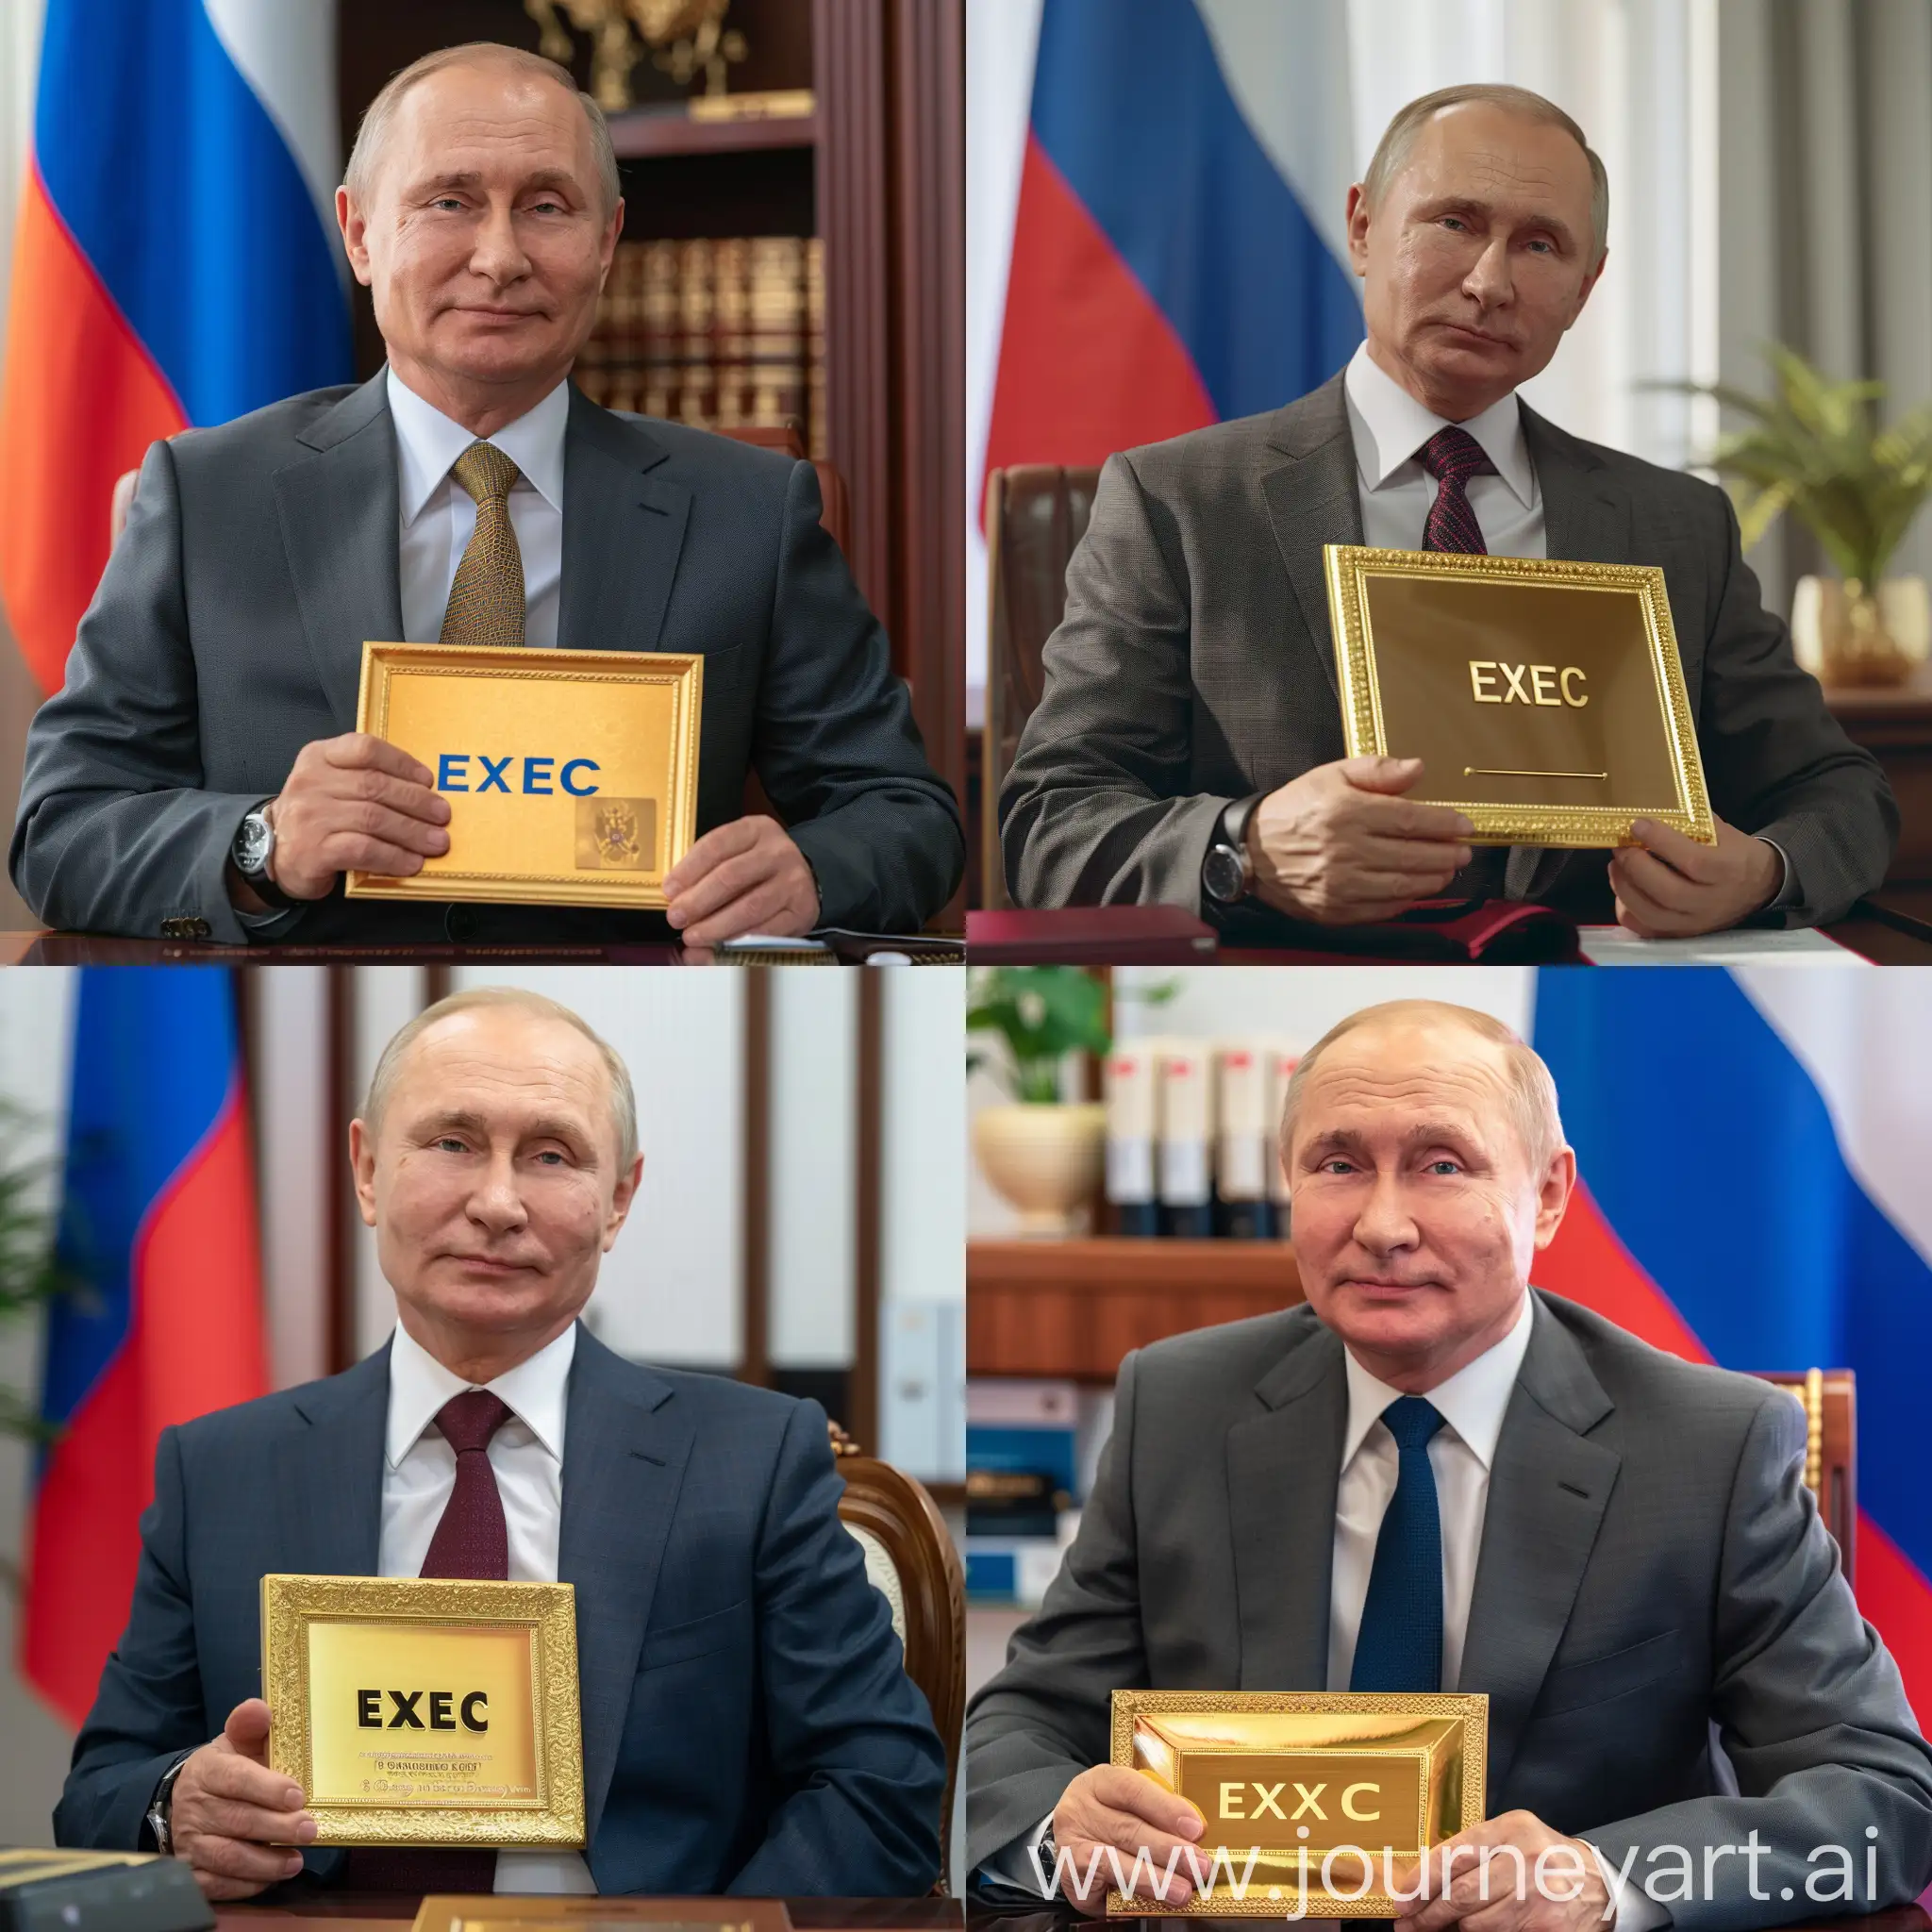 Владимир Путин в деловом костюме, сидит в кабинете президента, в руках золотая табличка с надписью "Exec", задний фон флаг россии, острый фокус, крупный план, профессиональное освещение, 8к, гипер реализм, максимум деталей